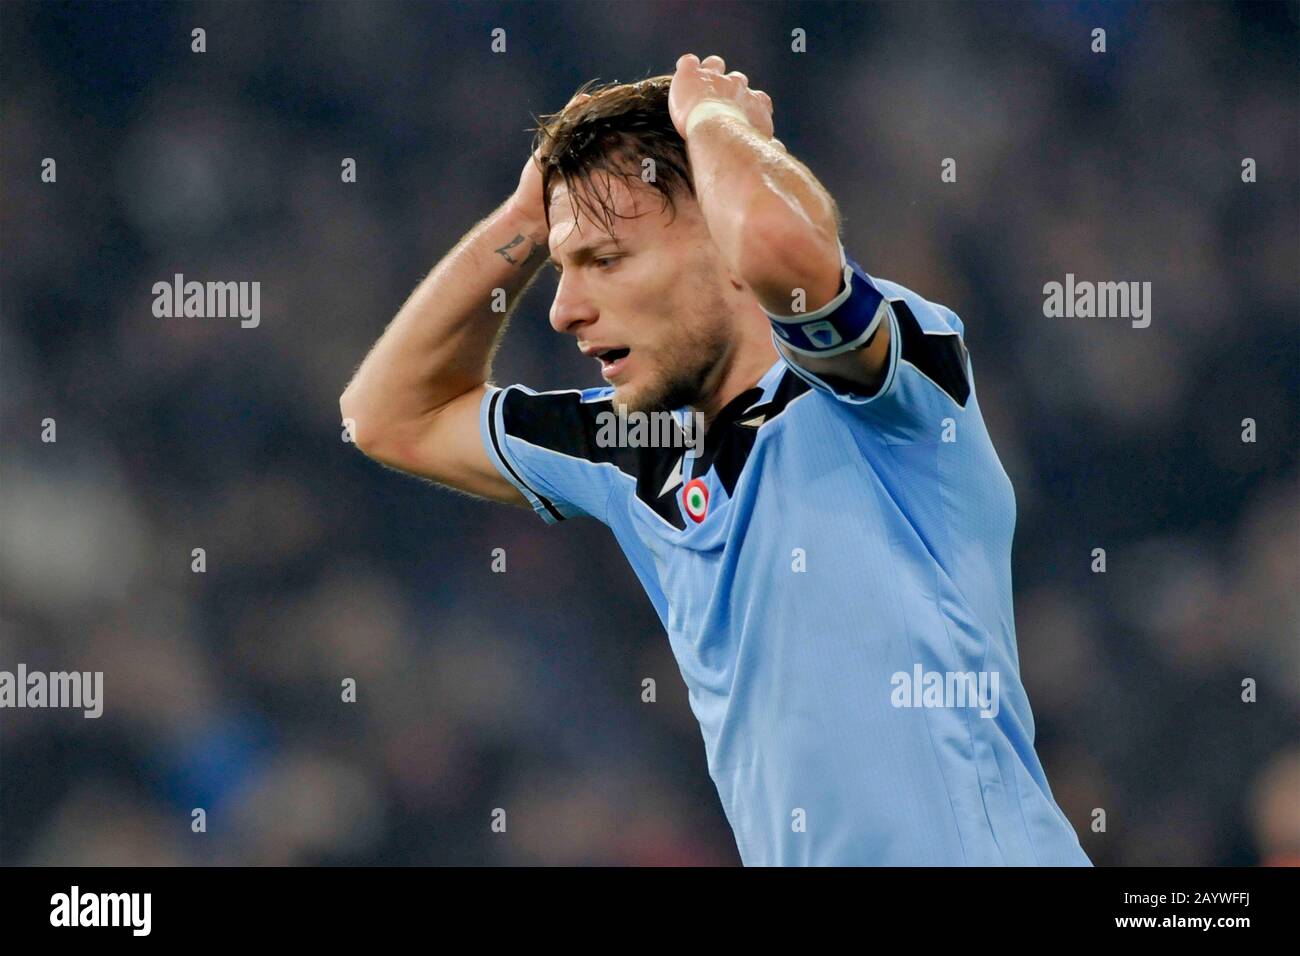 Serie A football league, Lazio 2-1 Inter 16 February 2020 Stock Photo